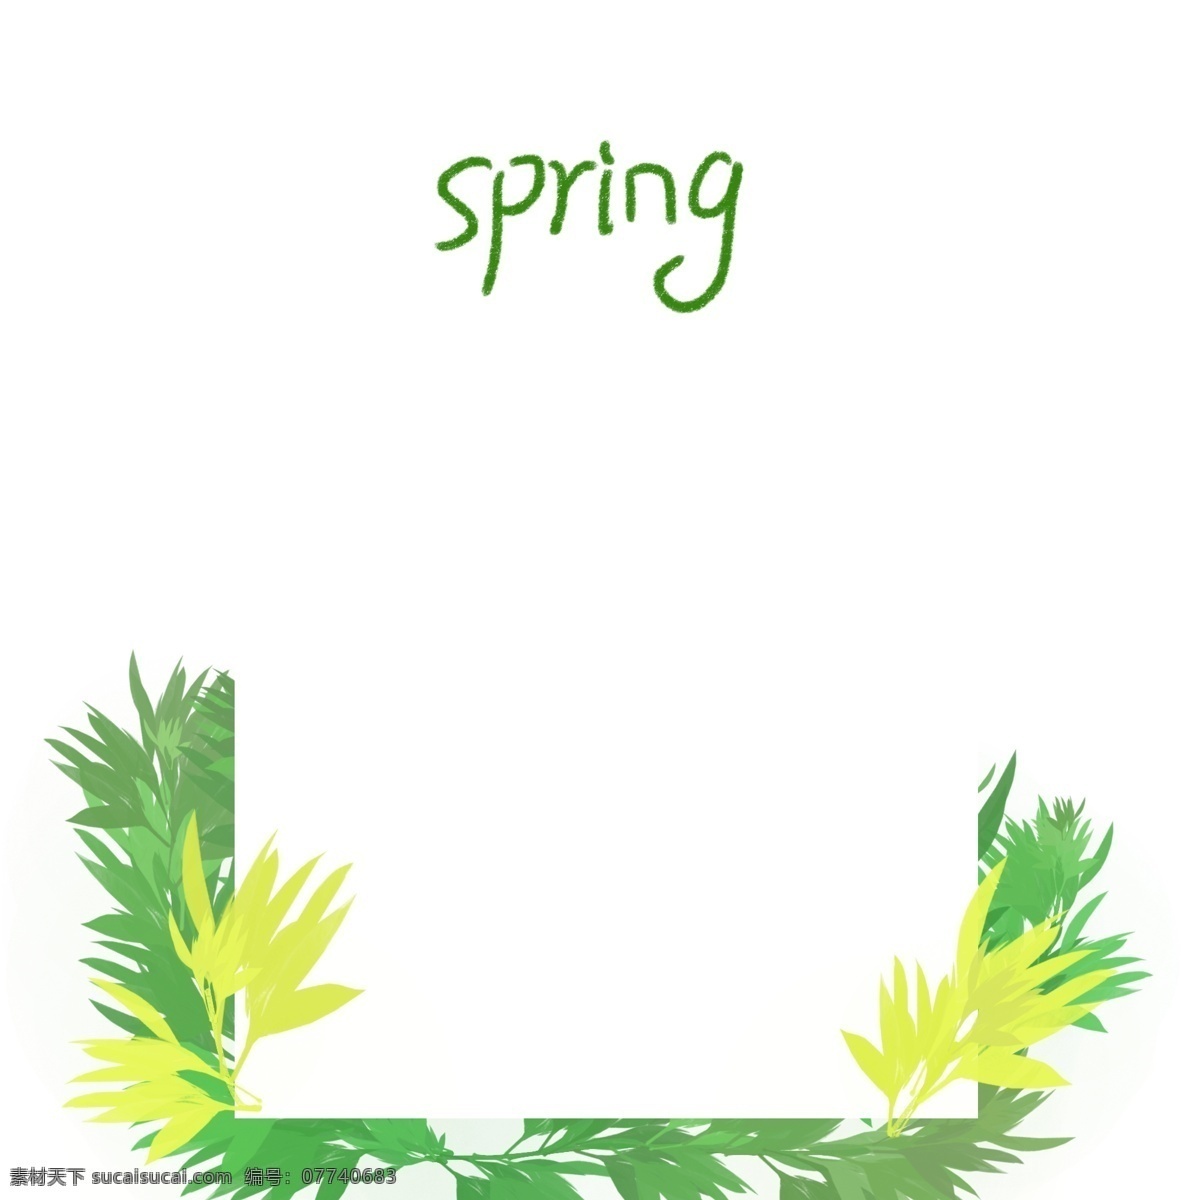 春季 夏季 清新 绿色 树叶 边框 春天 夏日 手绘 植物 海报边框 小清新边框 绿叶边框